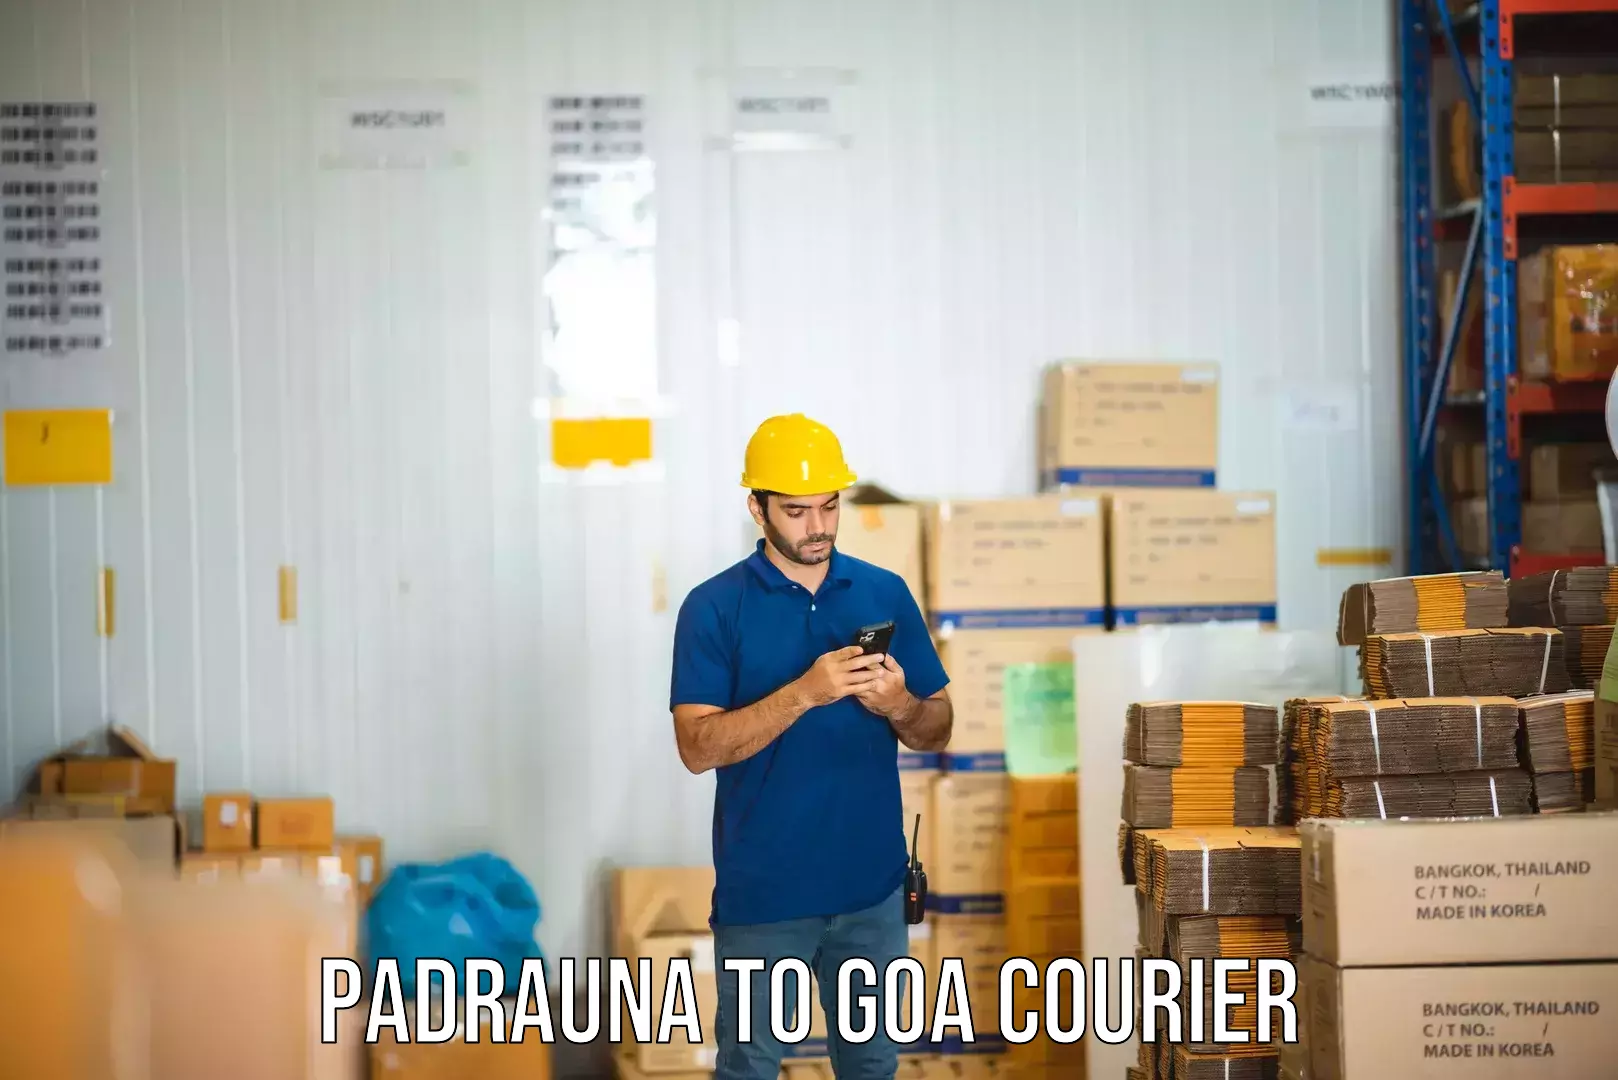 Specialized shipment handling Padrauna to NIT Goa